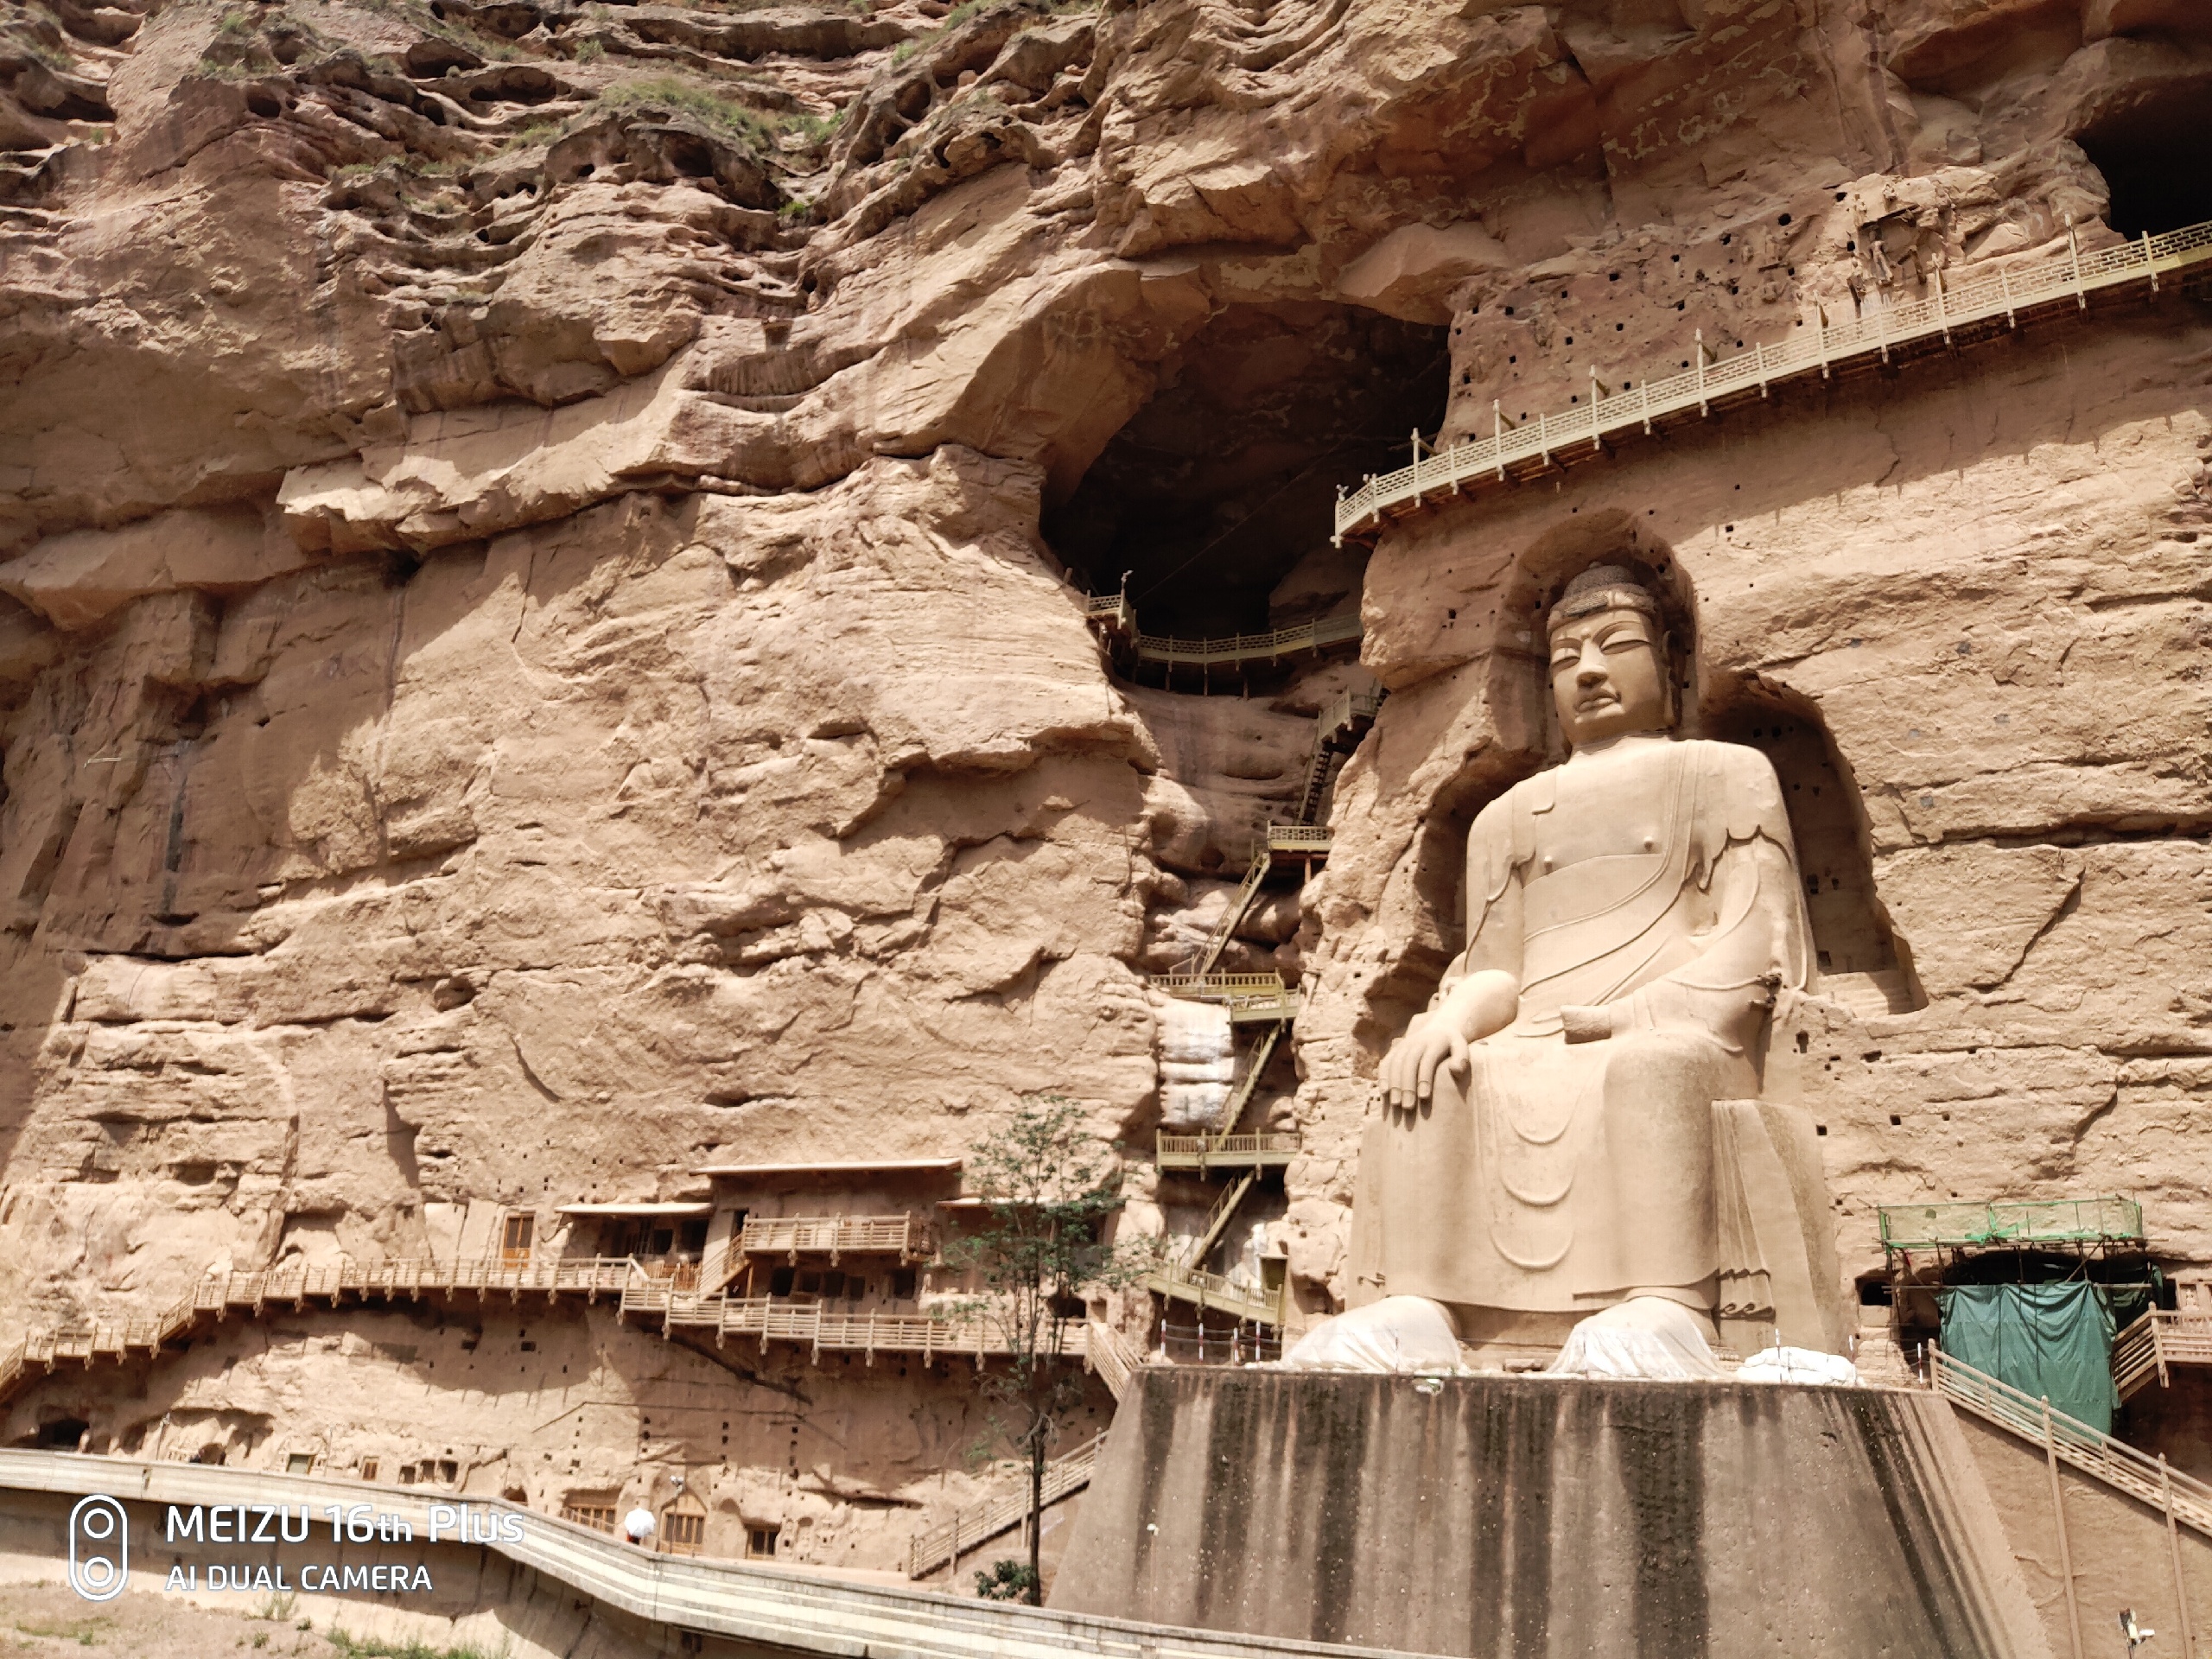 去刘家峡顺便去了一趟炳灵寺，算是个小惊喜，挺震撼的-炳灵寺石窟